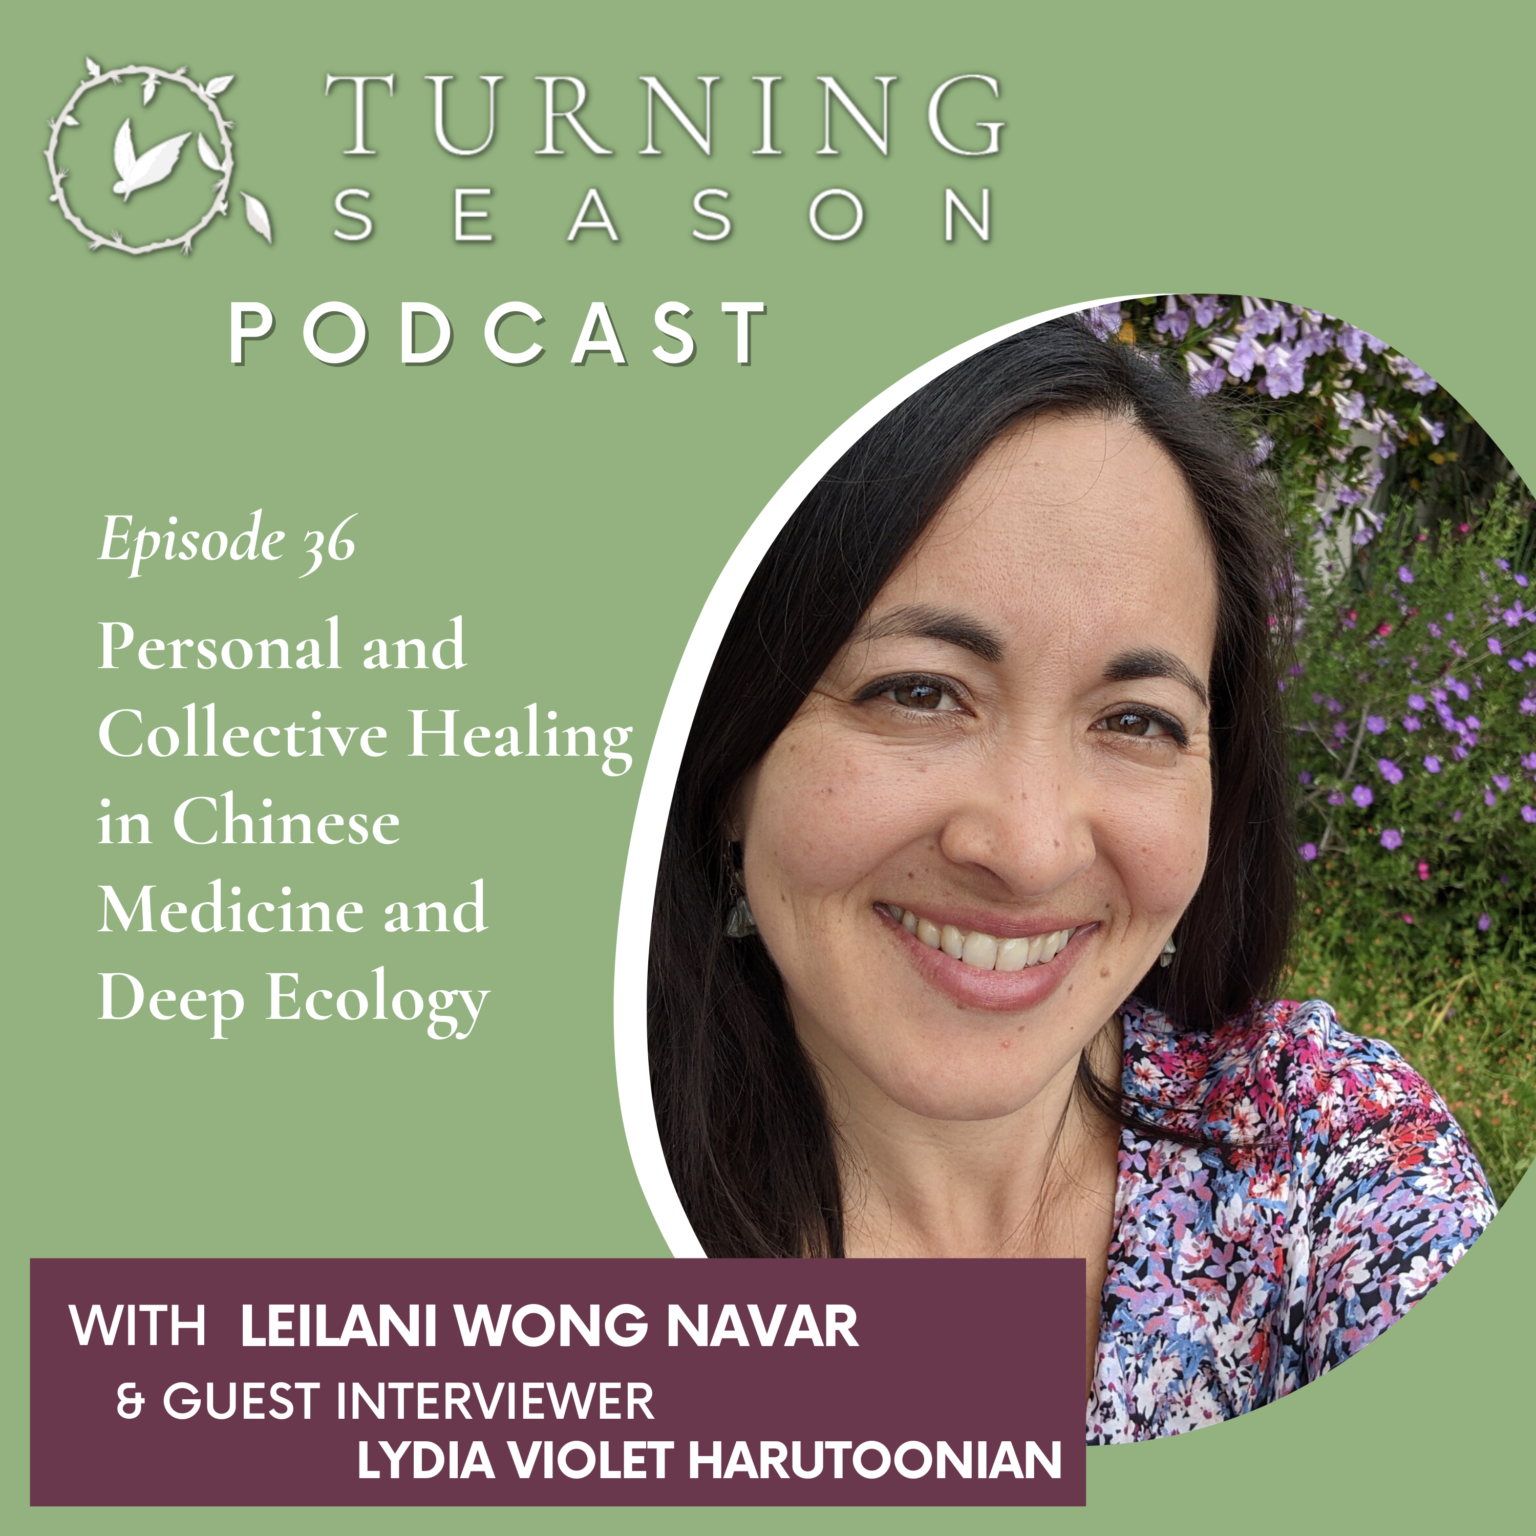 Turning Season Podcast Episode 36 with Leilani Wong Navar and Lydia Violet Harutoonian turningseason.com